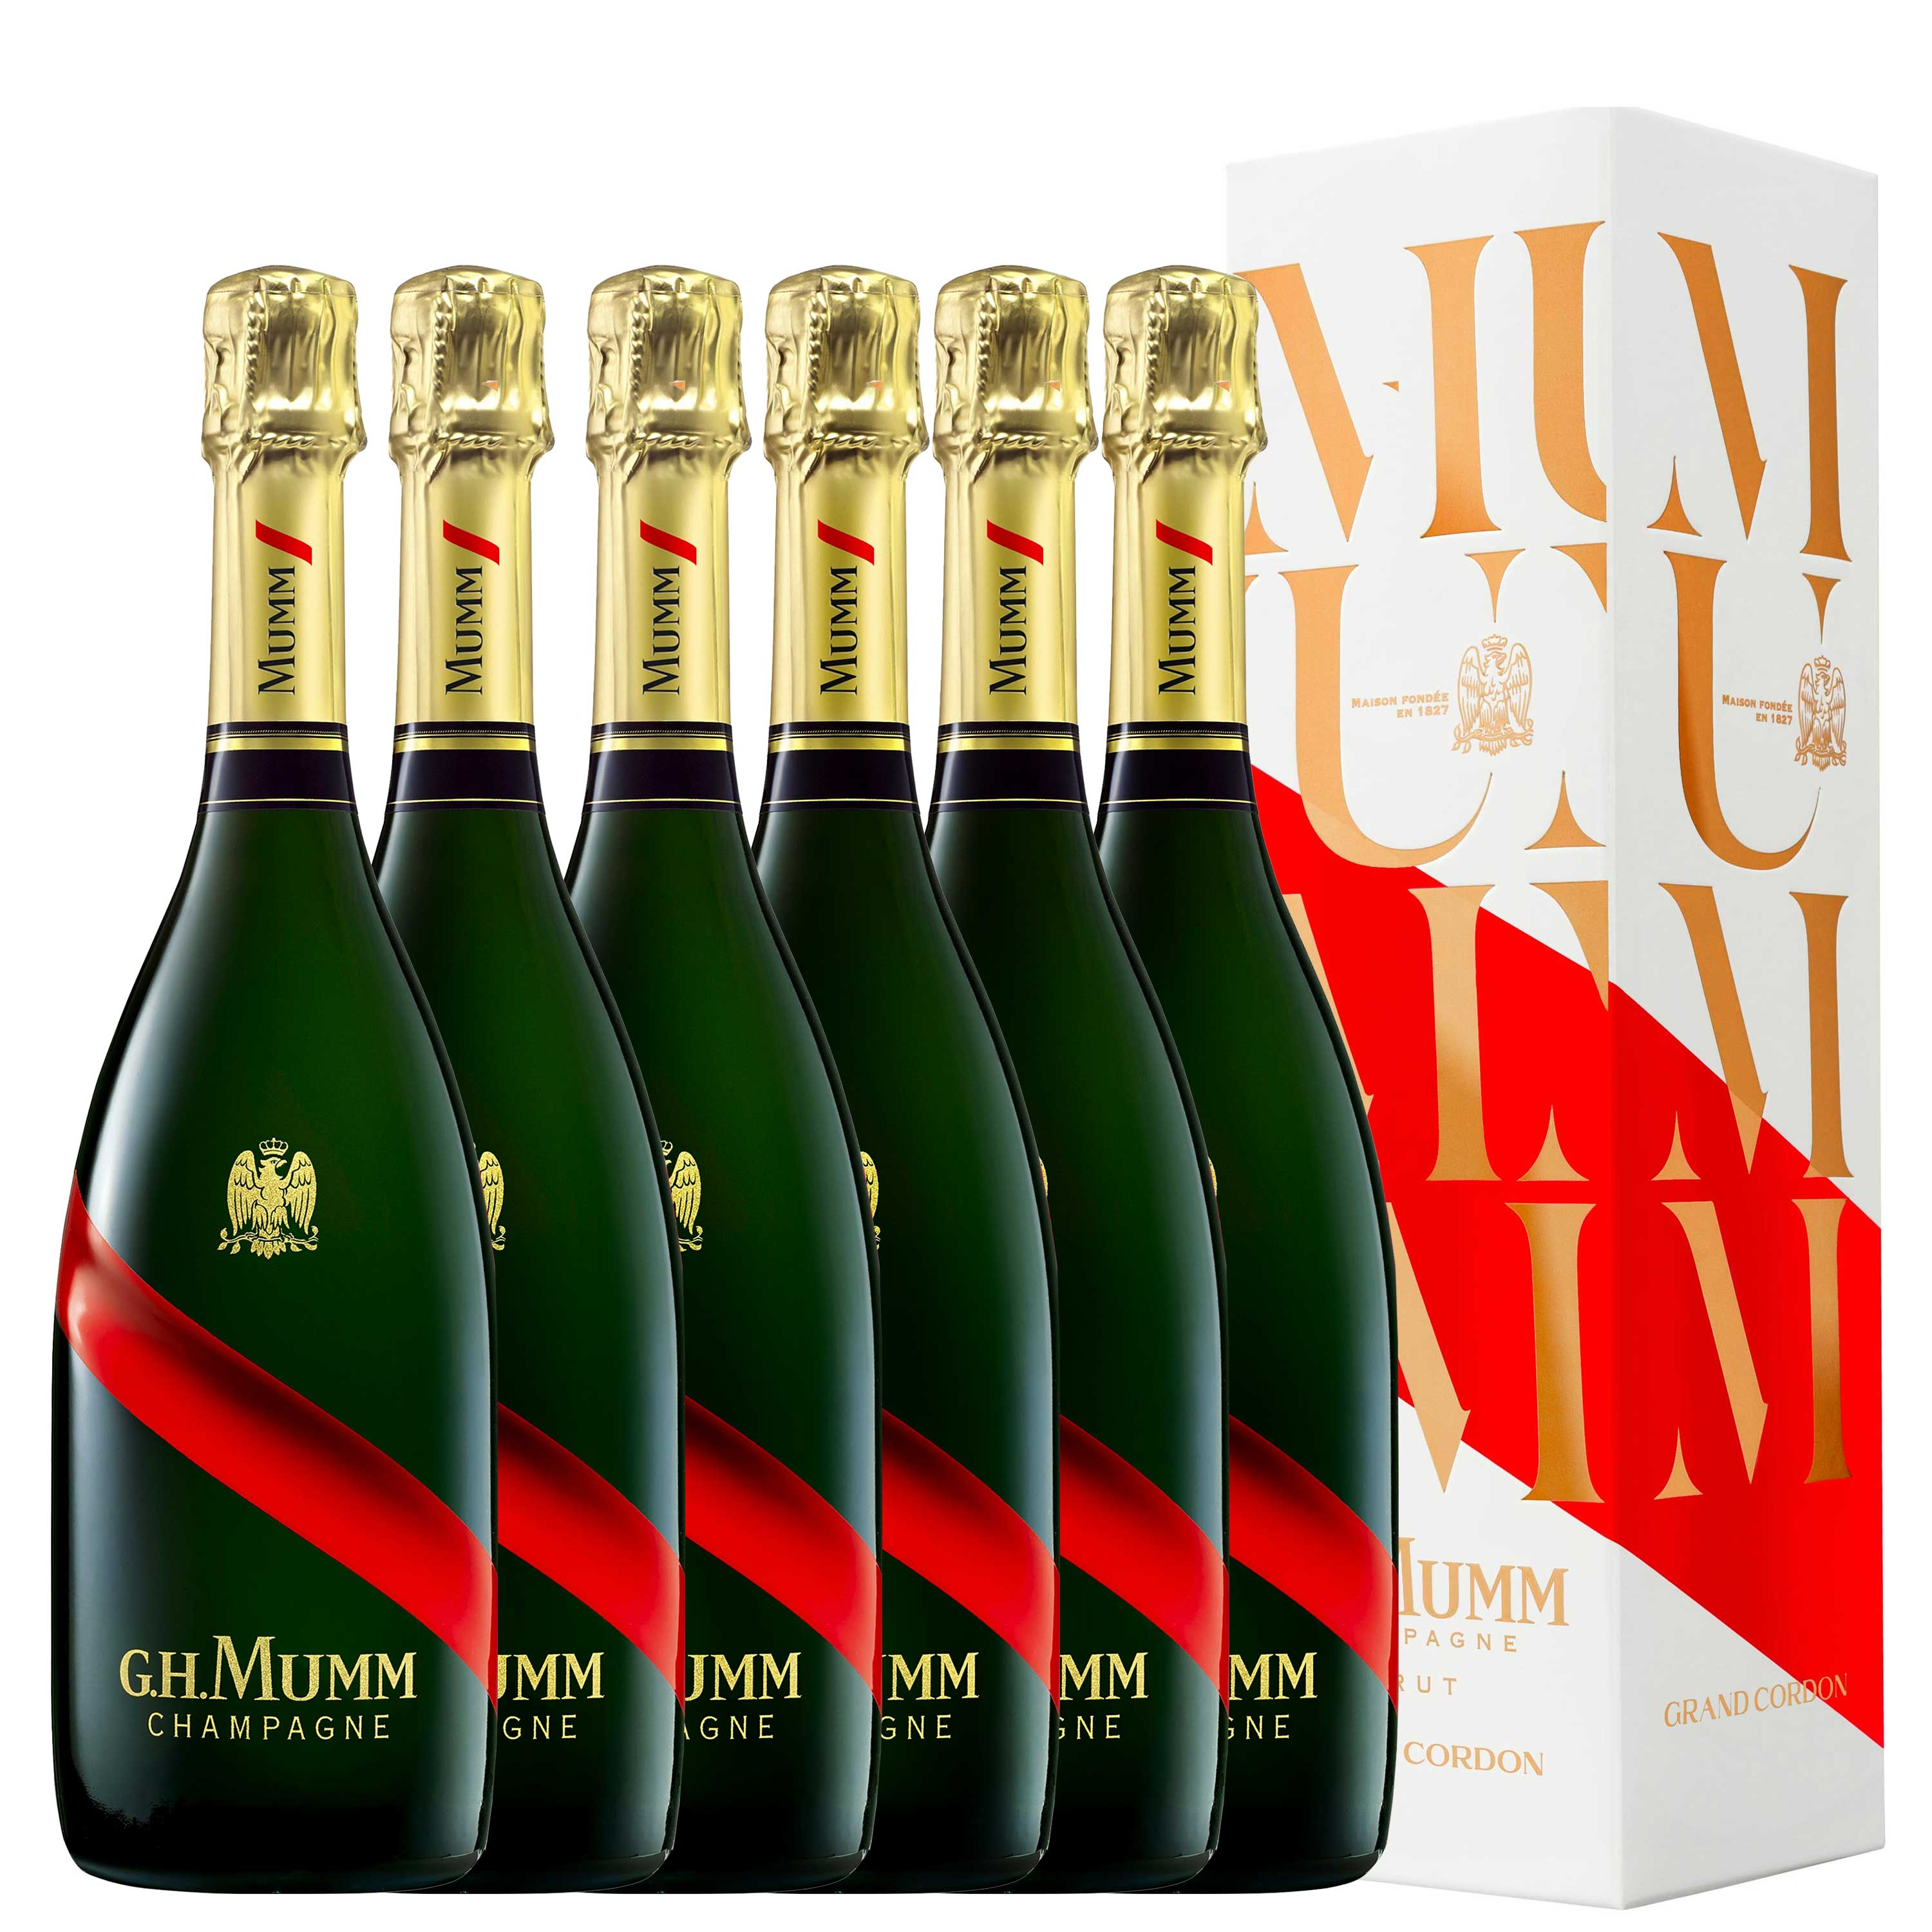 Champagne Brut Grand Cordon